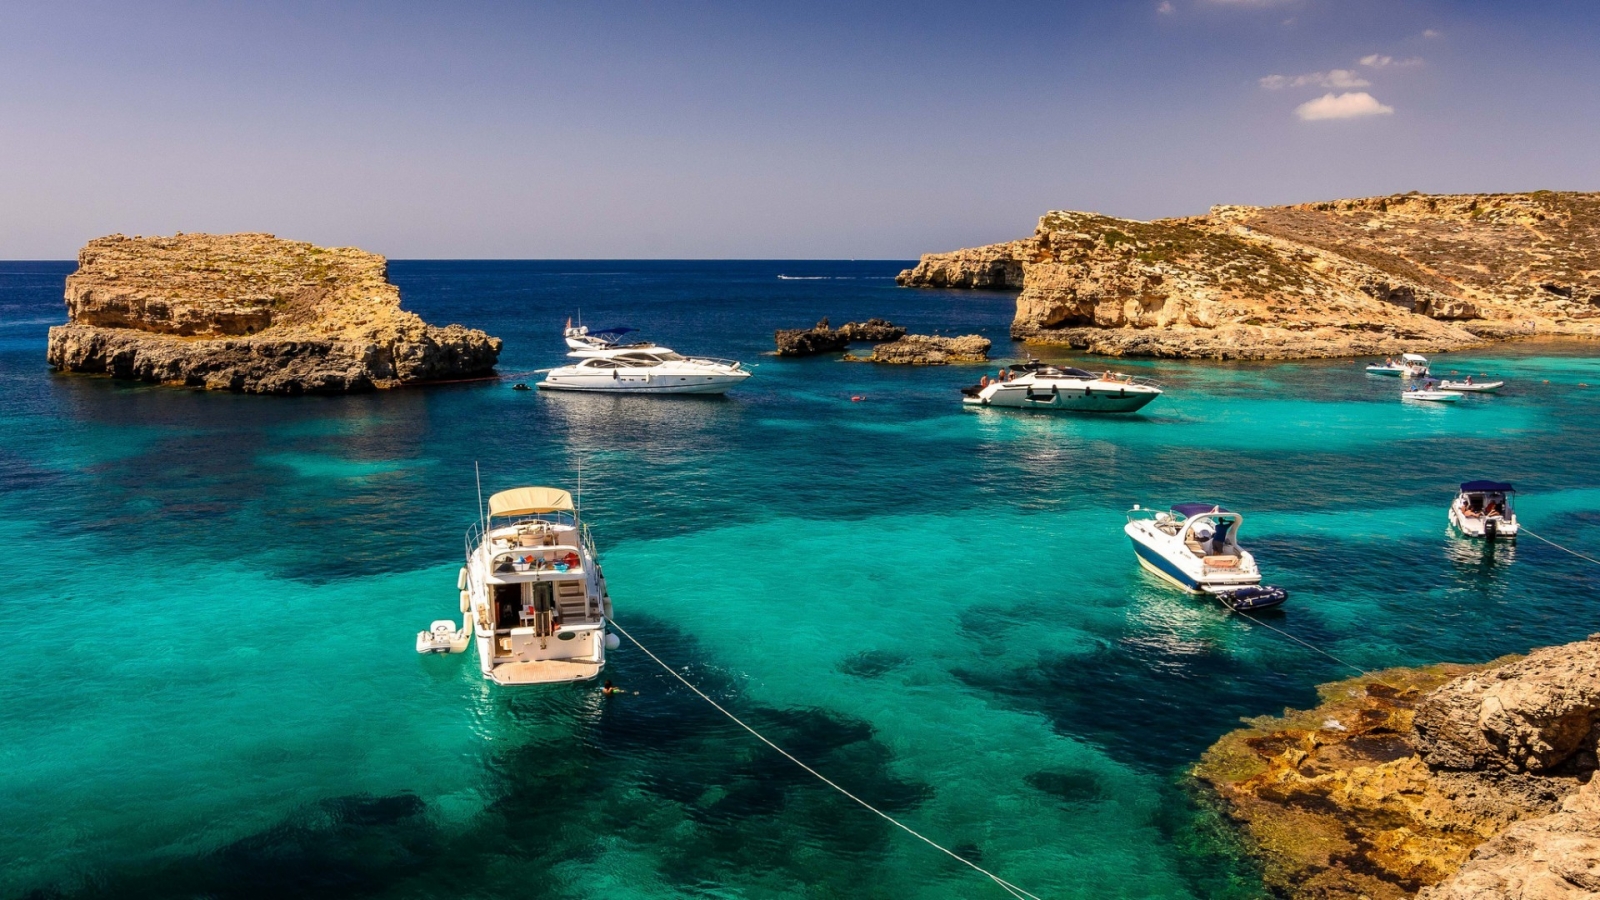 Malta Sea Corner for 1600 x 900 HDTV resolution